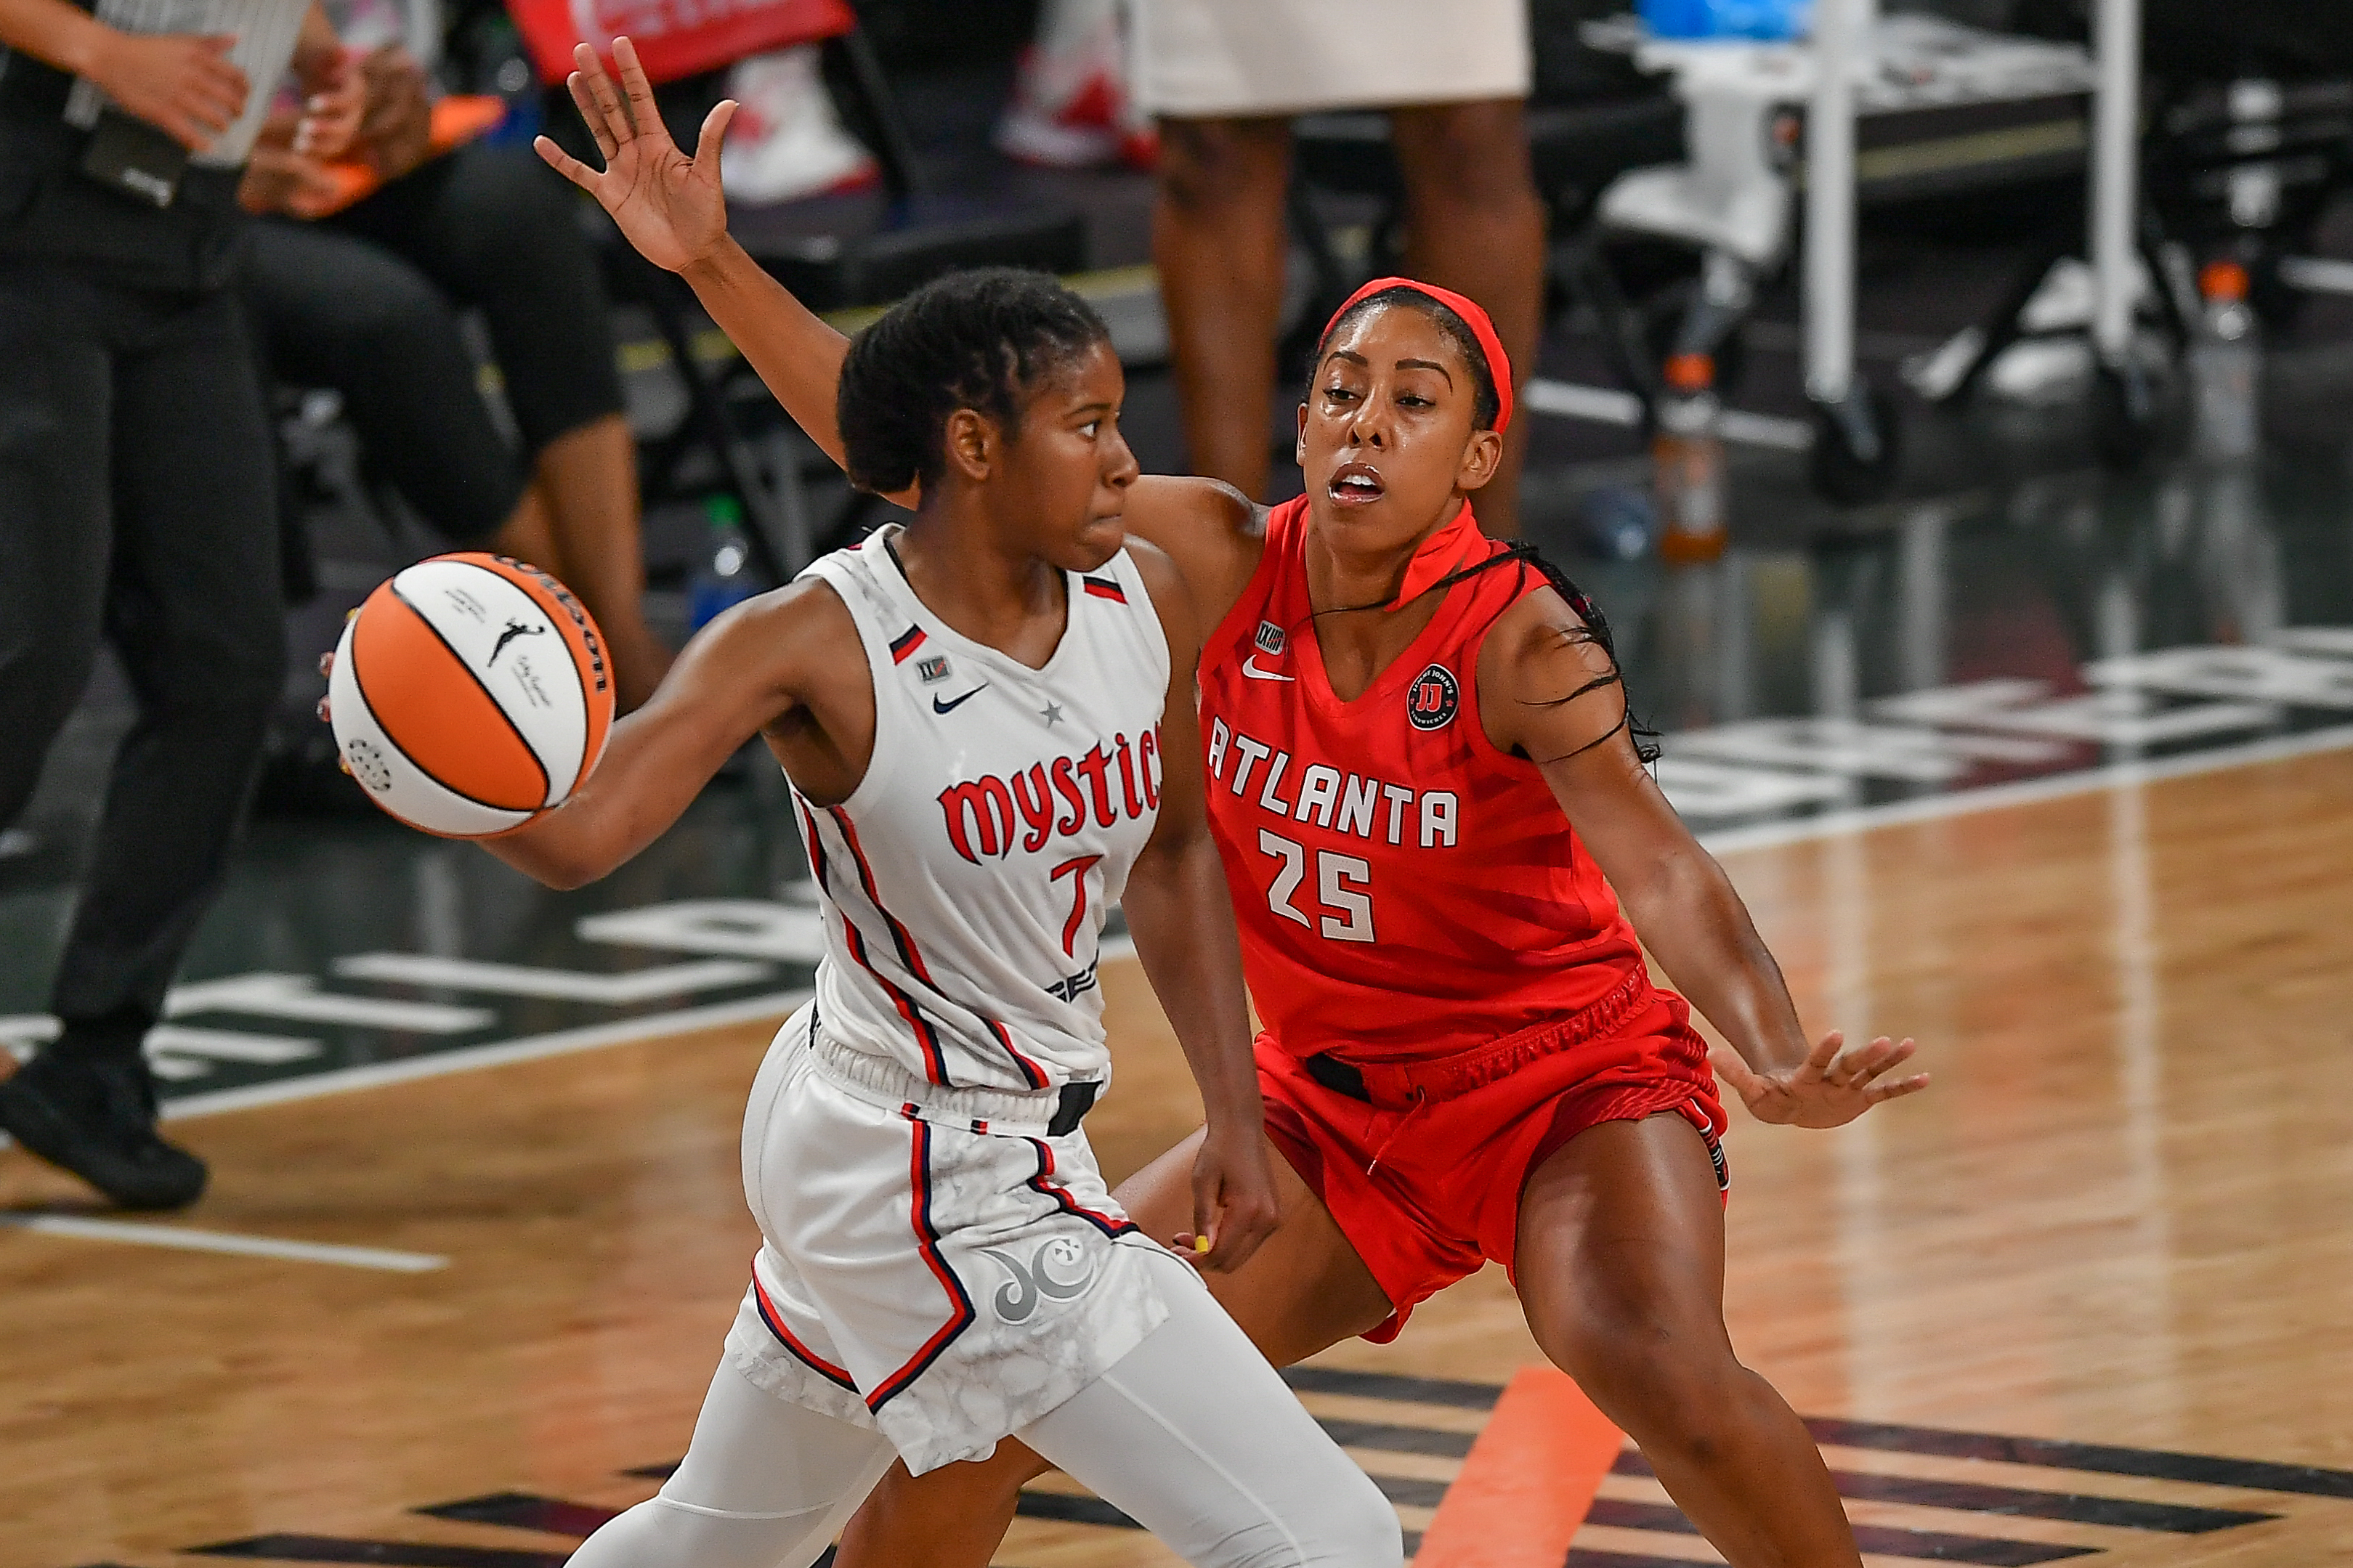 WNBA: JUN 13 Washington Mystics at Atlanta Dream